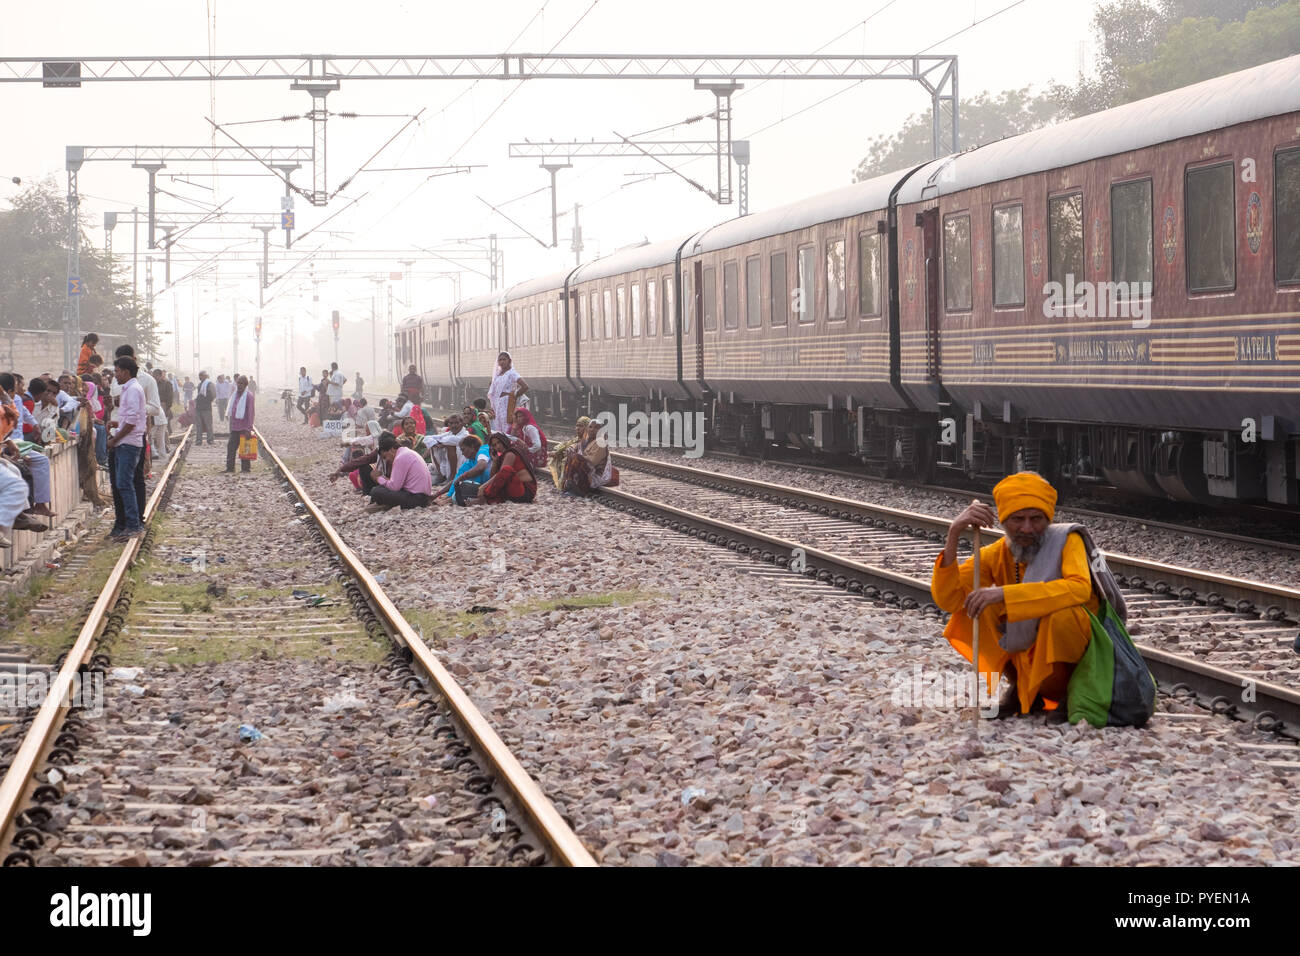 Les passagers qui attendent les Indiens sur la voie ferrée pour un train d'arriver, l'Inde Banque D'Images